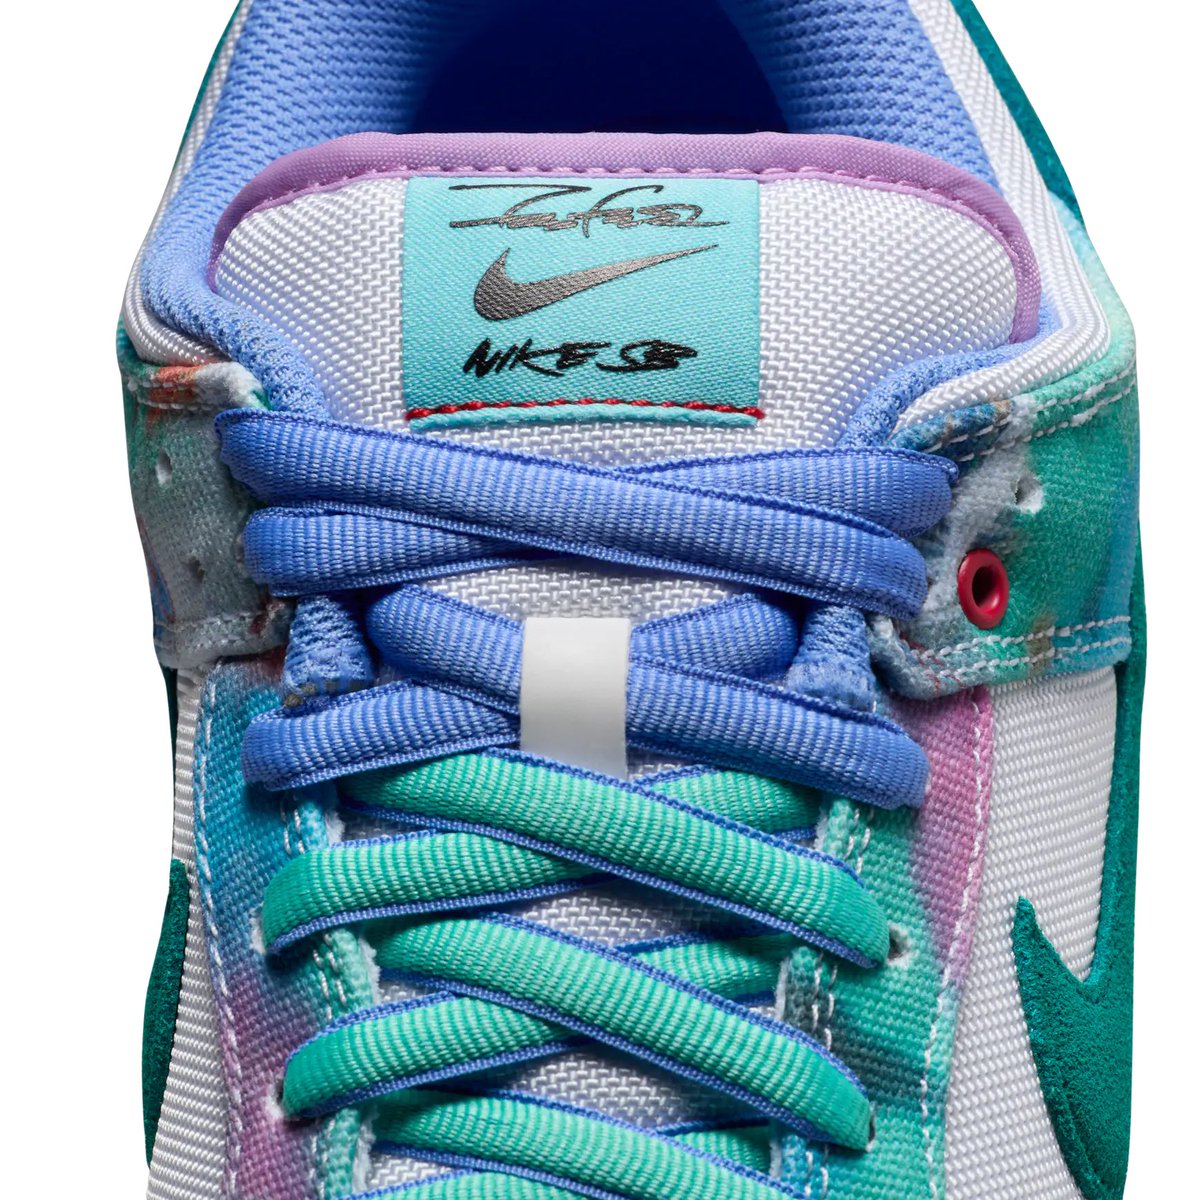 Futura x Nike SB Dunk Low 
🗓️ May 15 (Futura) May18 (Skate shops) May 22 (SNKRS) 
💰 $135